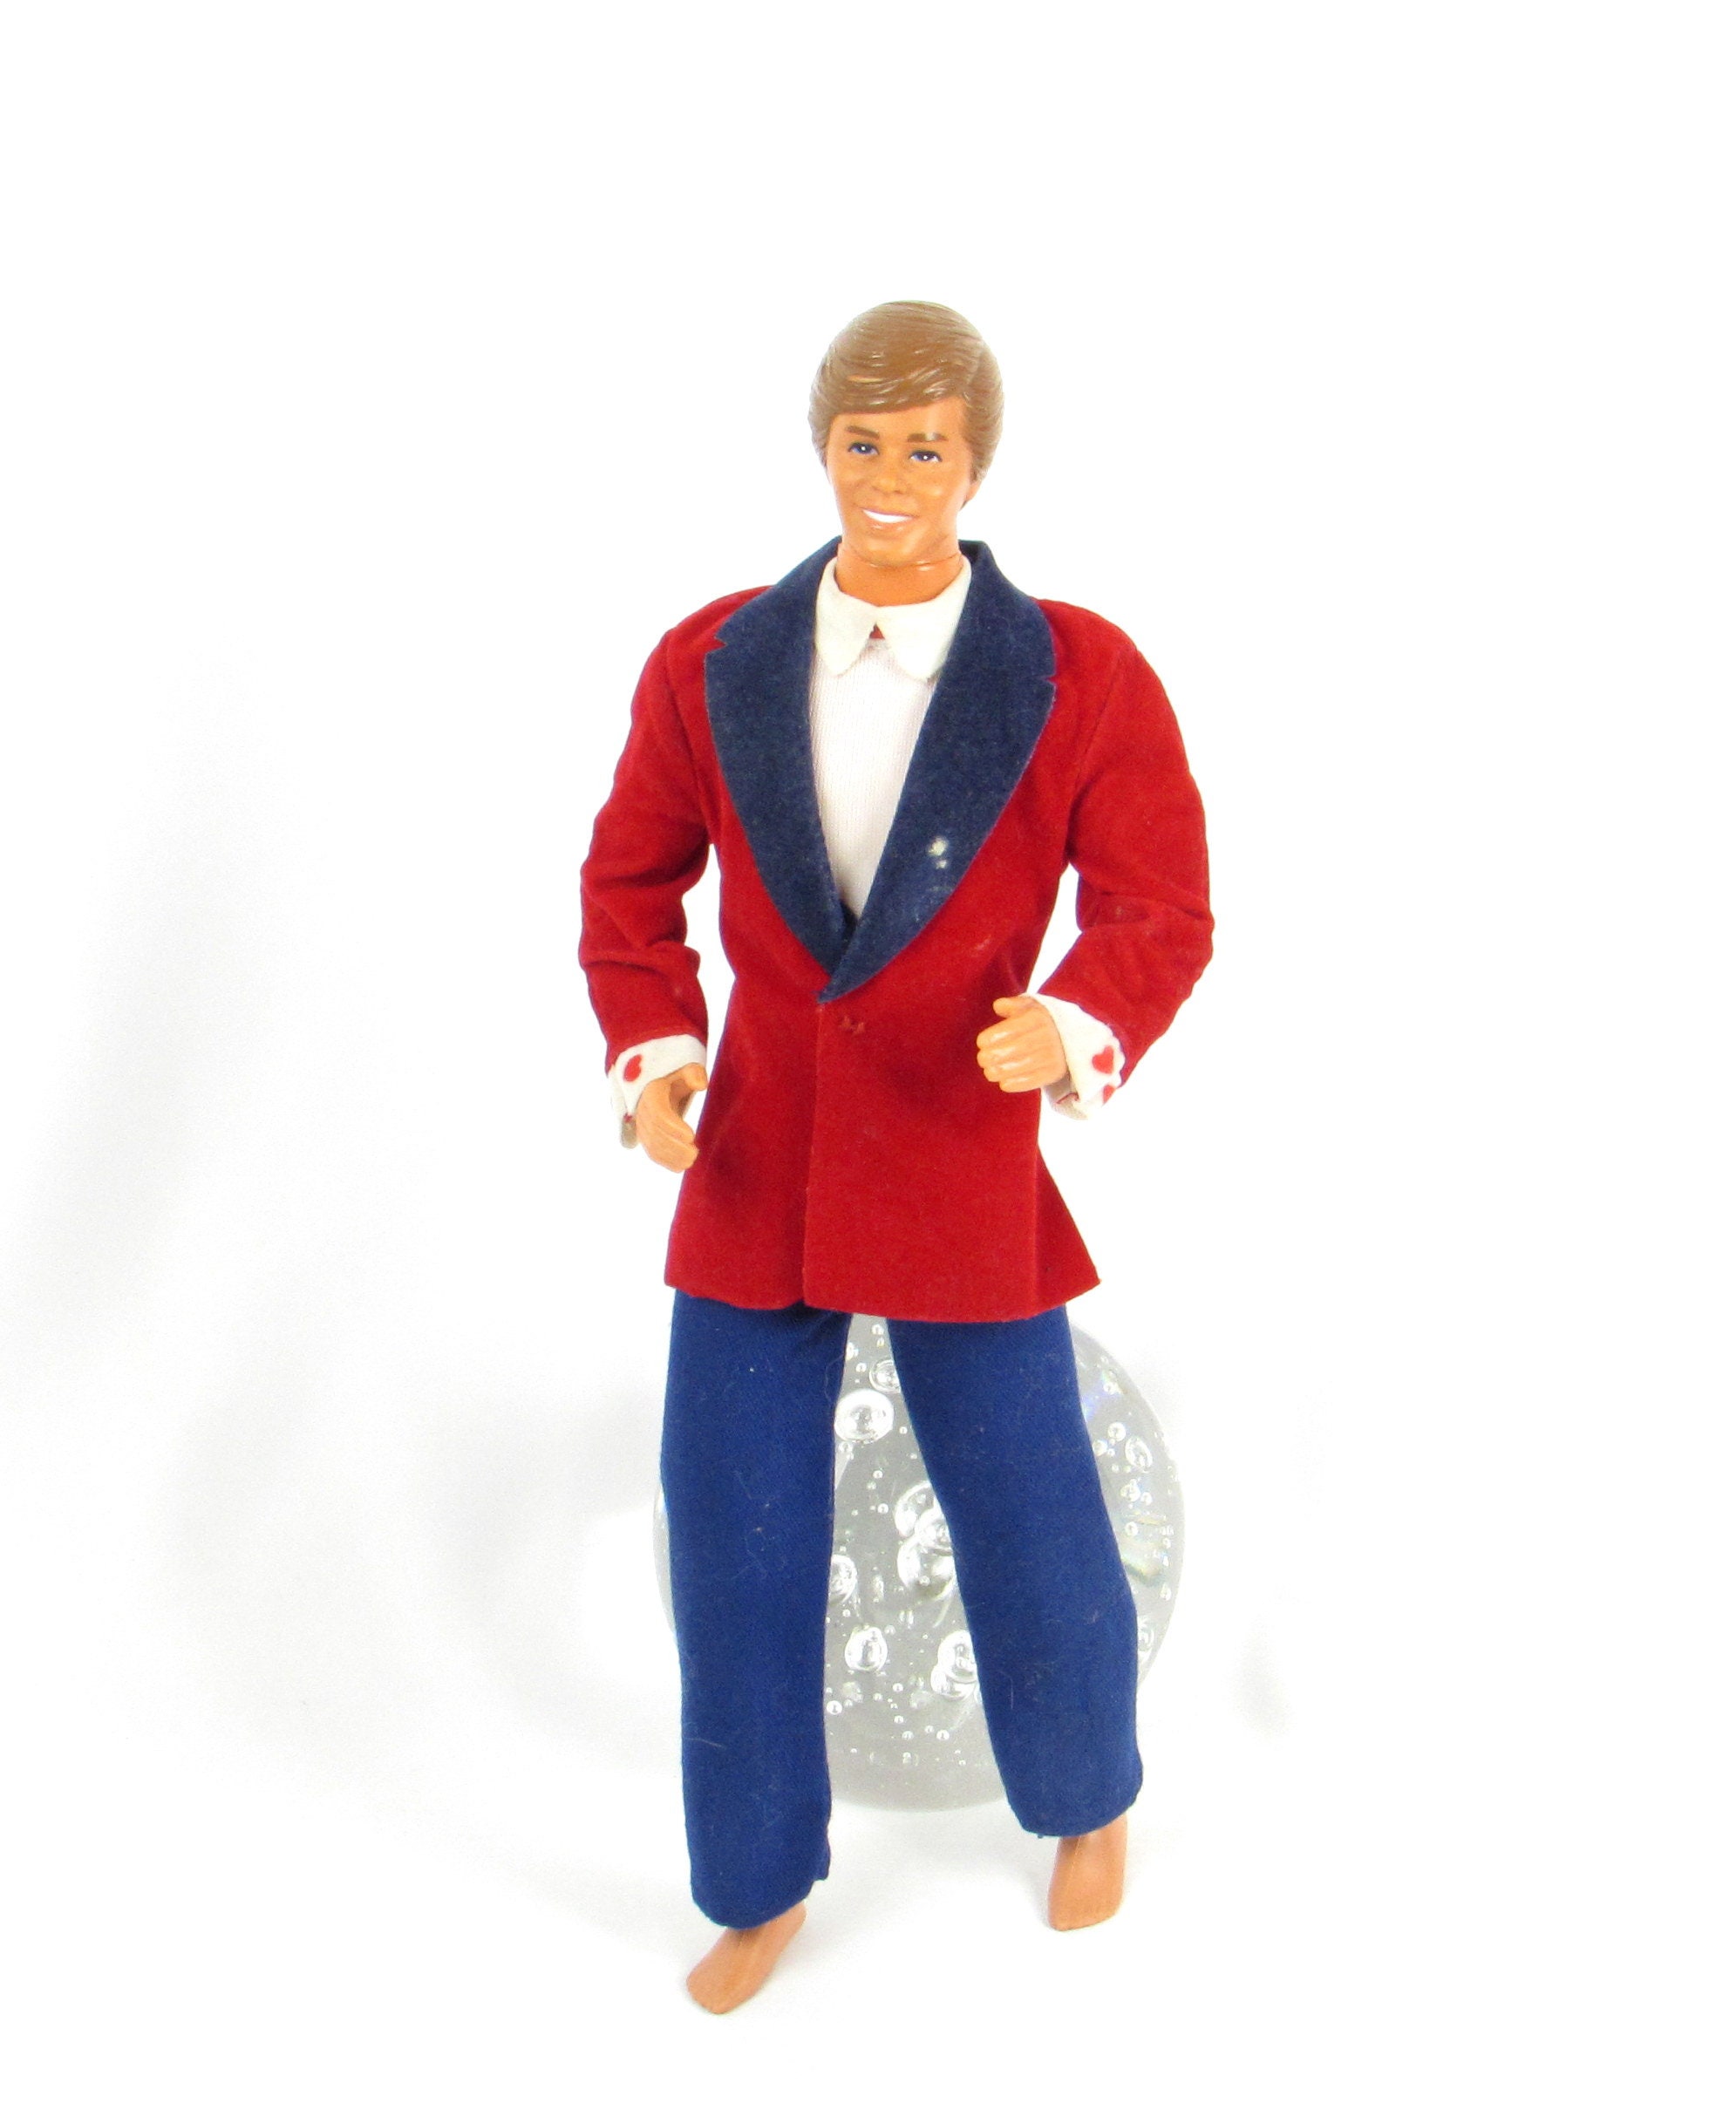 Poupée Barbie Ken en costume velours bleu - Mattel - Homme en